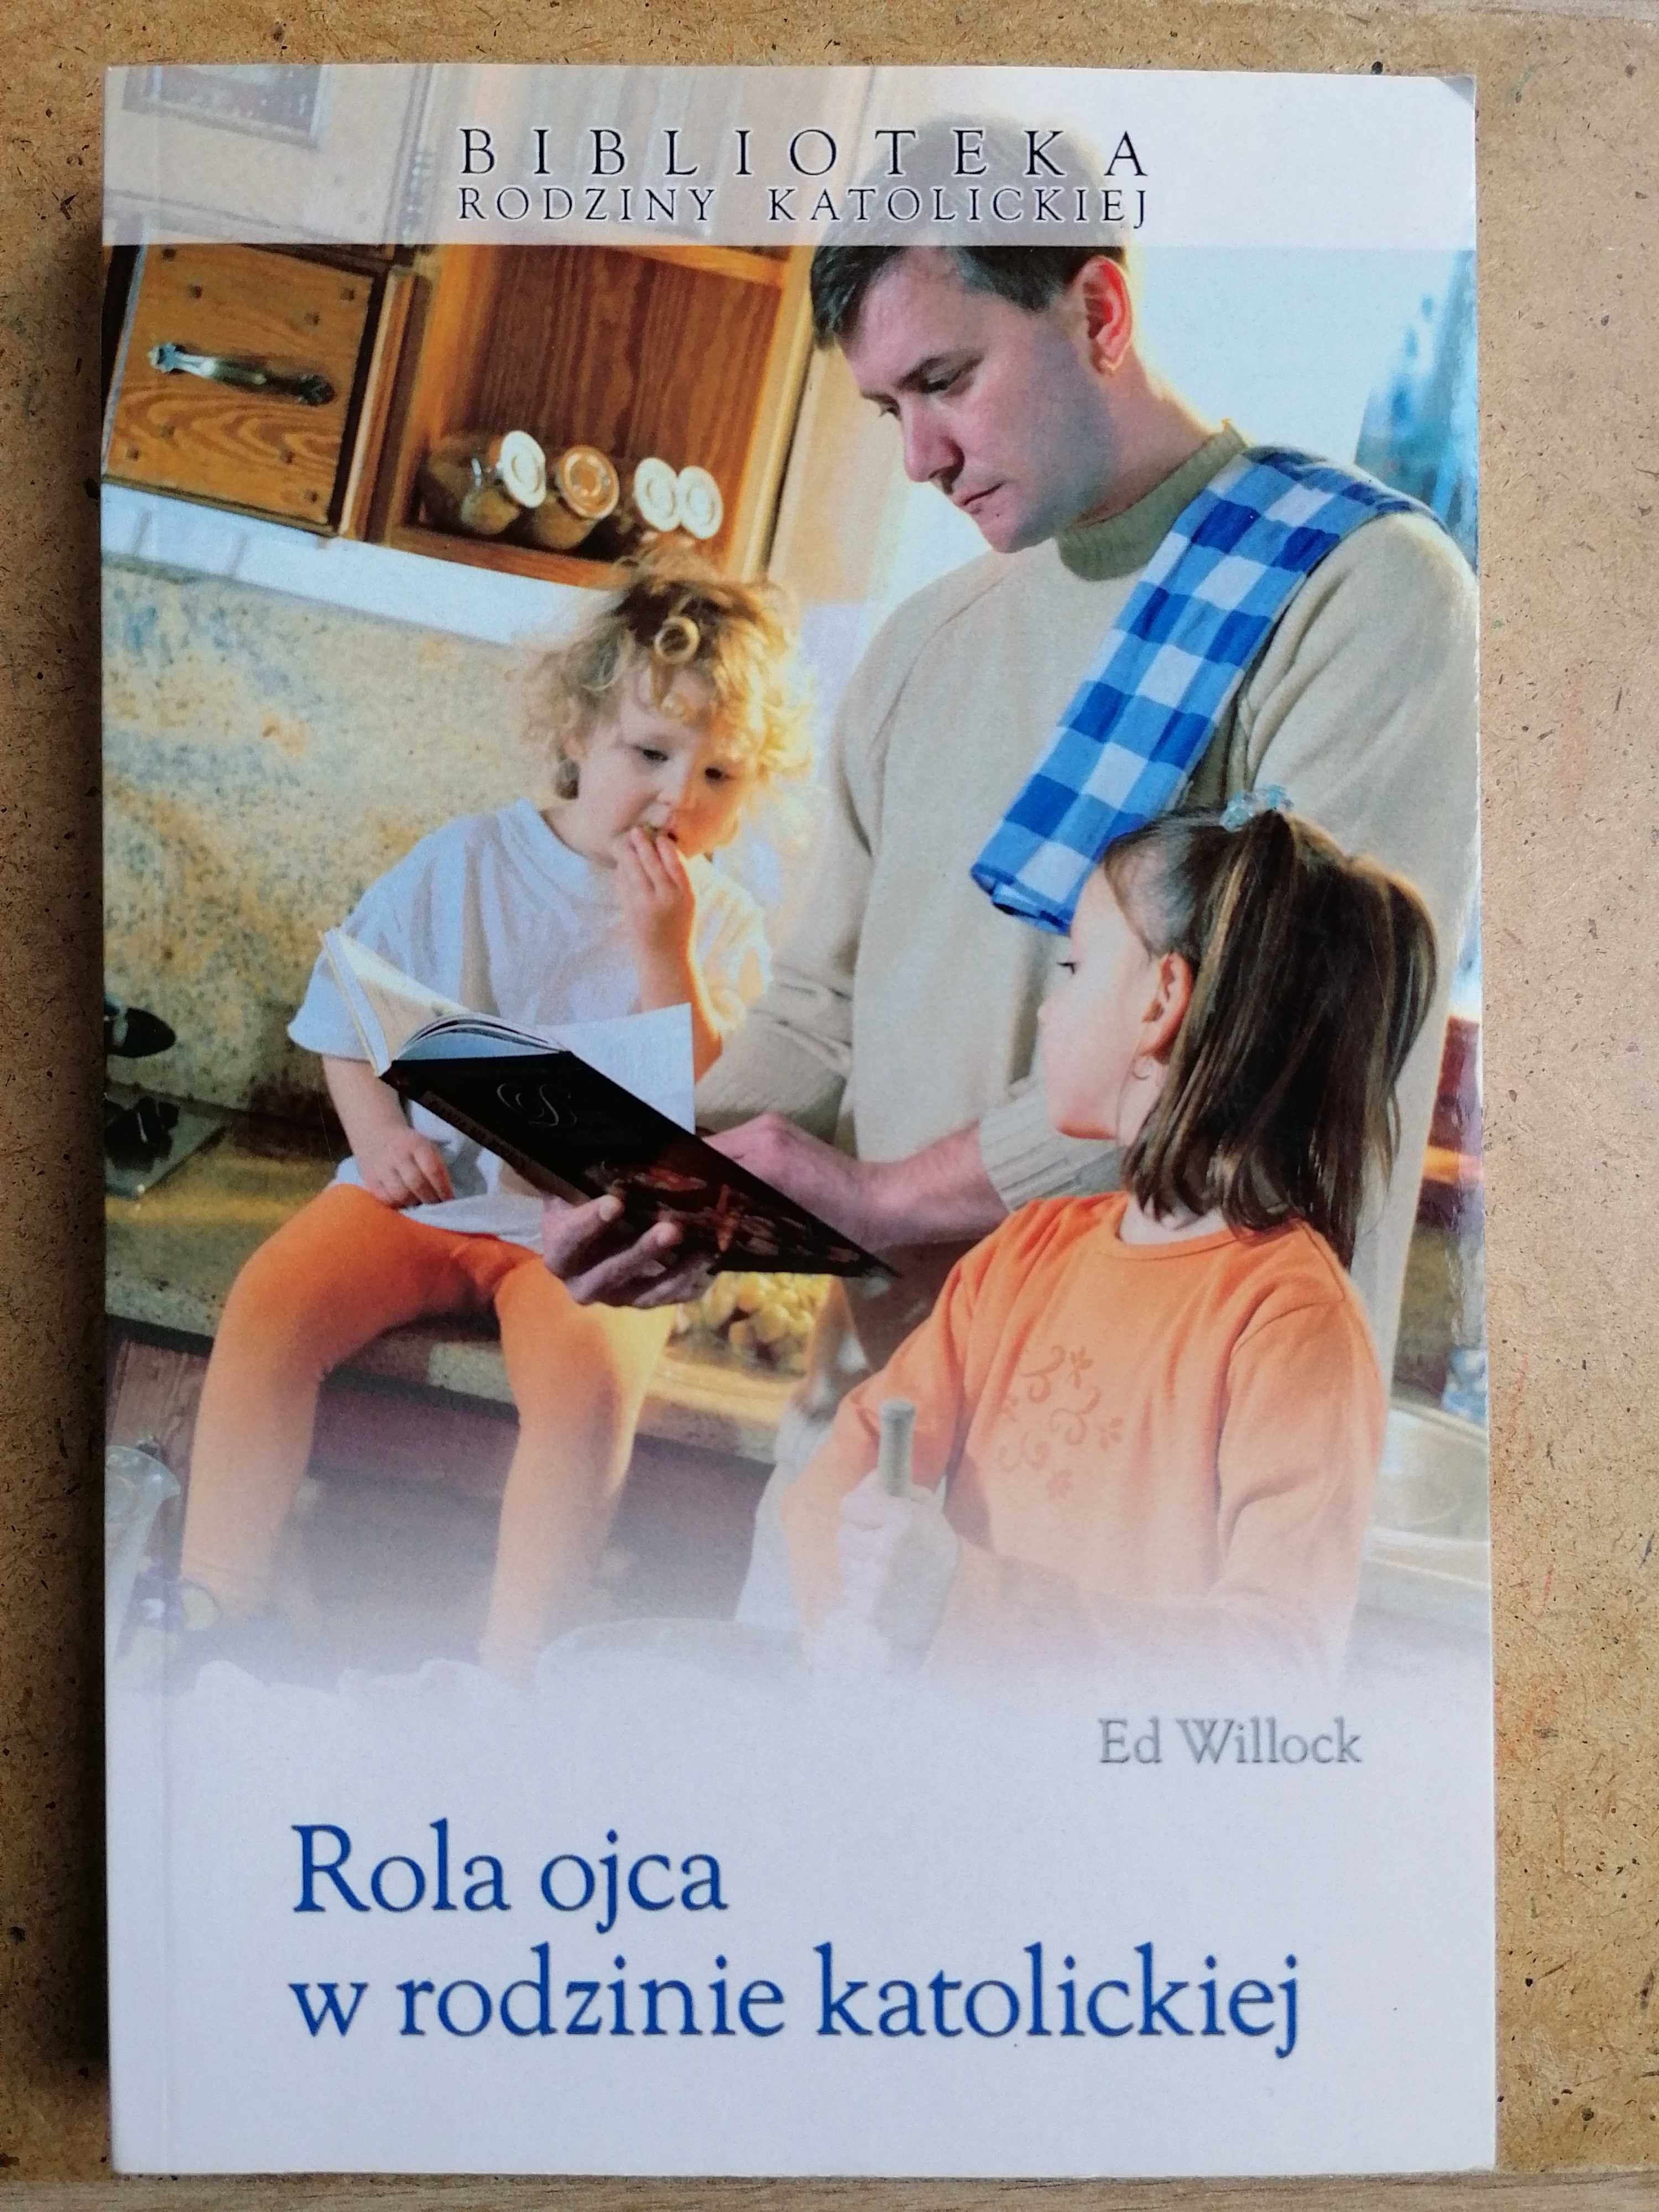 Ed Willock Rola ojca w rodzinie katolickiej.